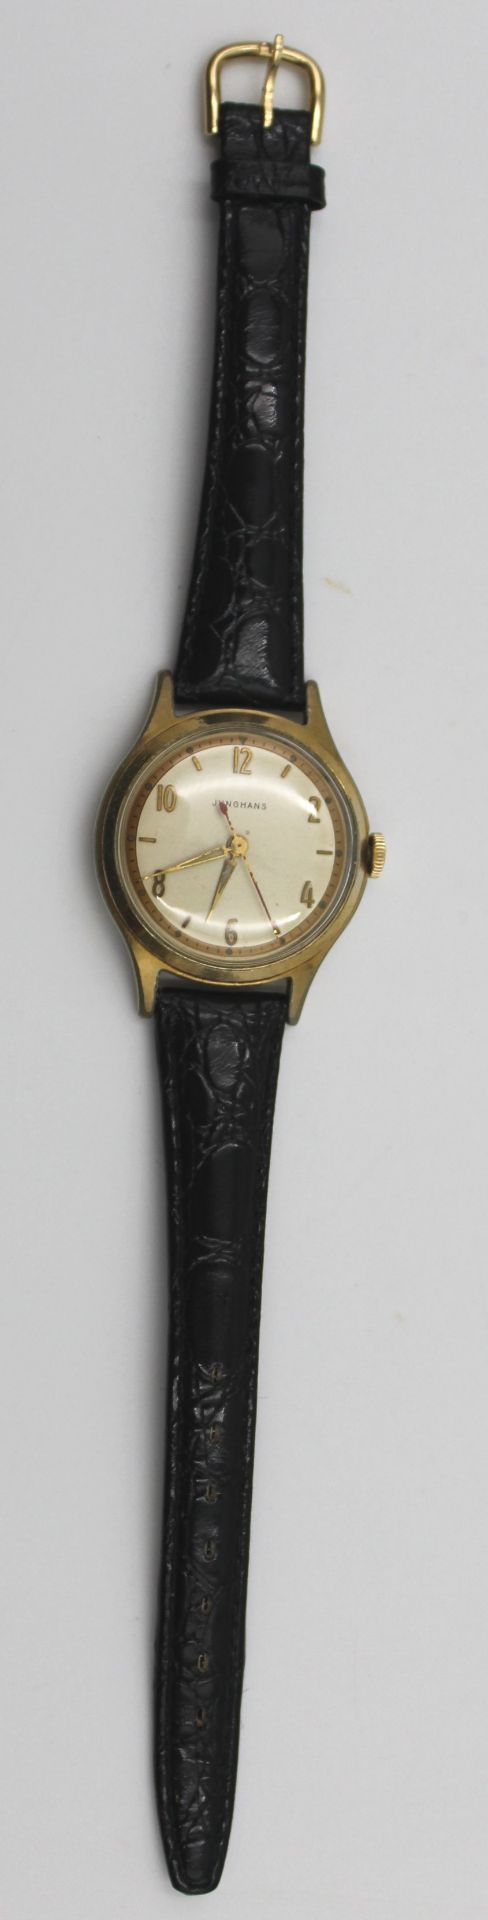 Vintage-Junghans-Armbanduhr, Handaufzug, Werk läuft, Tragespuren, D-3,5cm. - Bild 4 aus 4